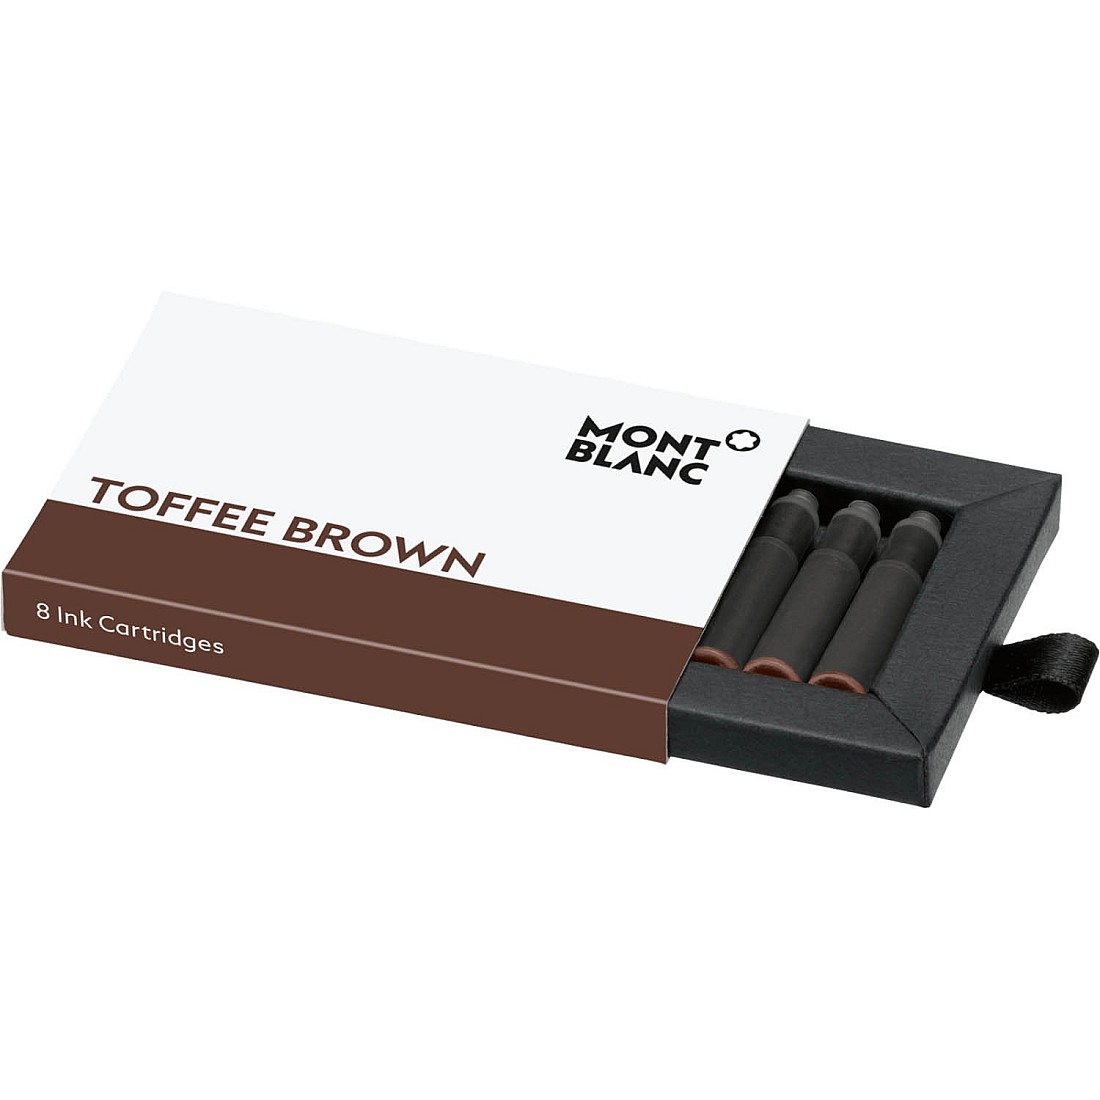 Montblanc Ink Cartridges Toffee Brown 105189